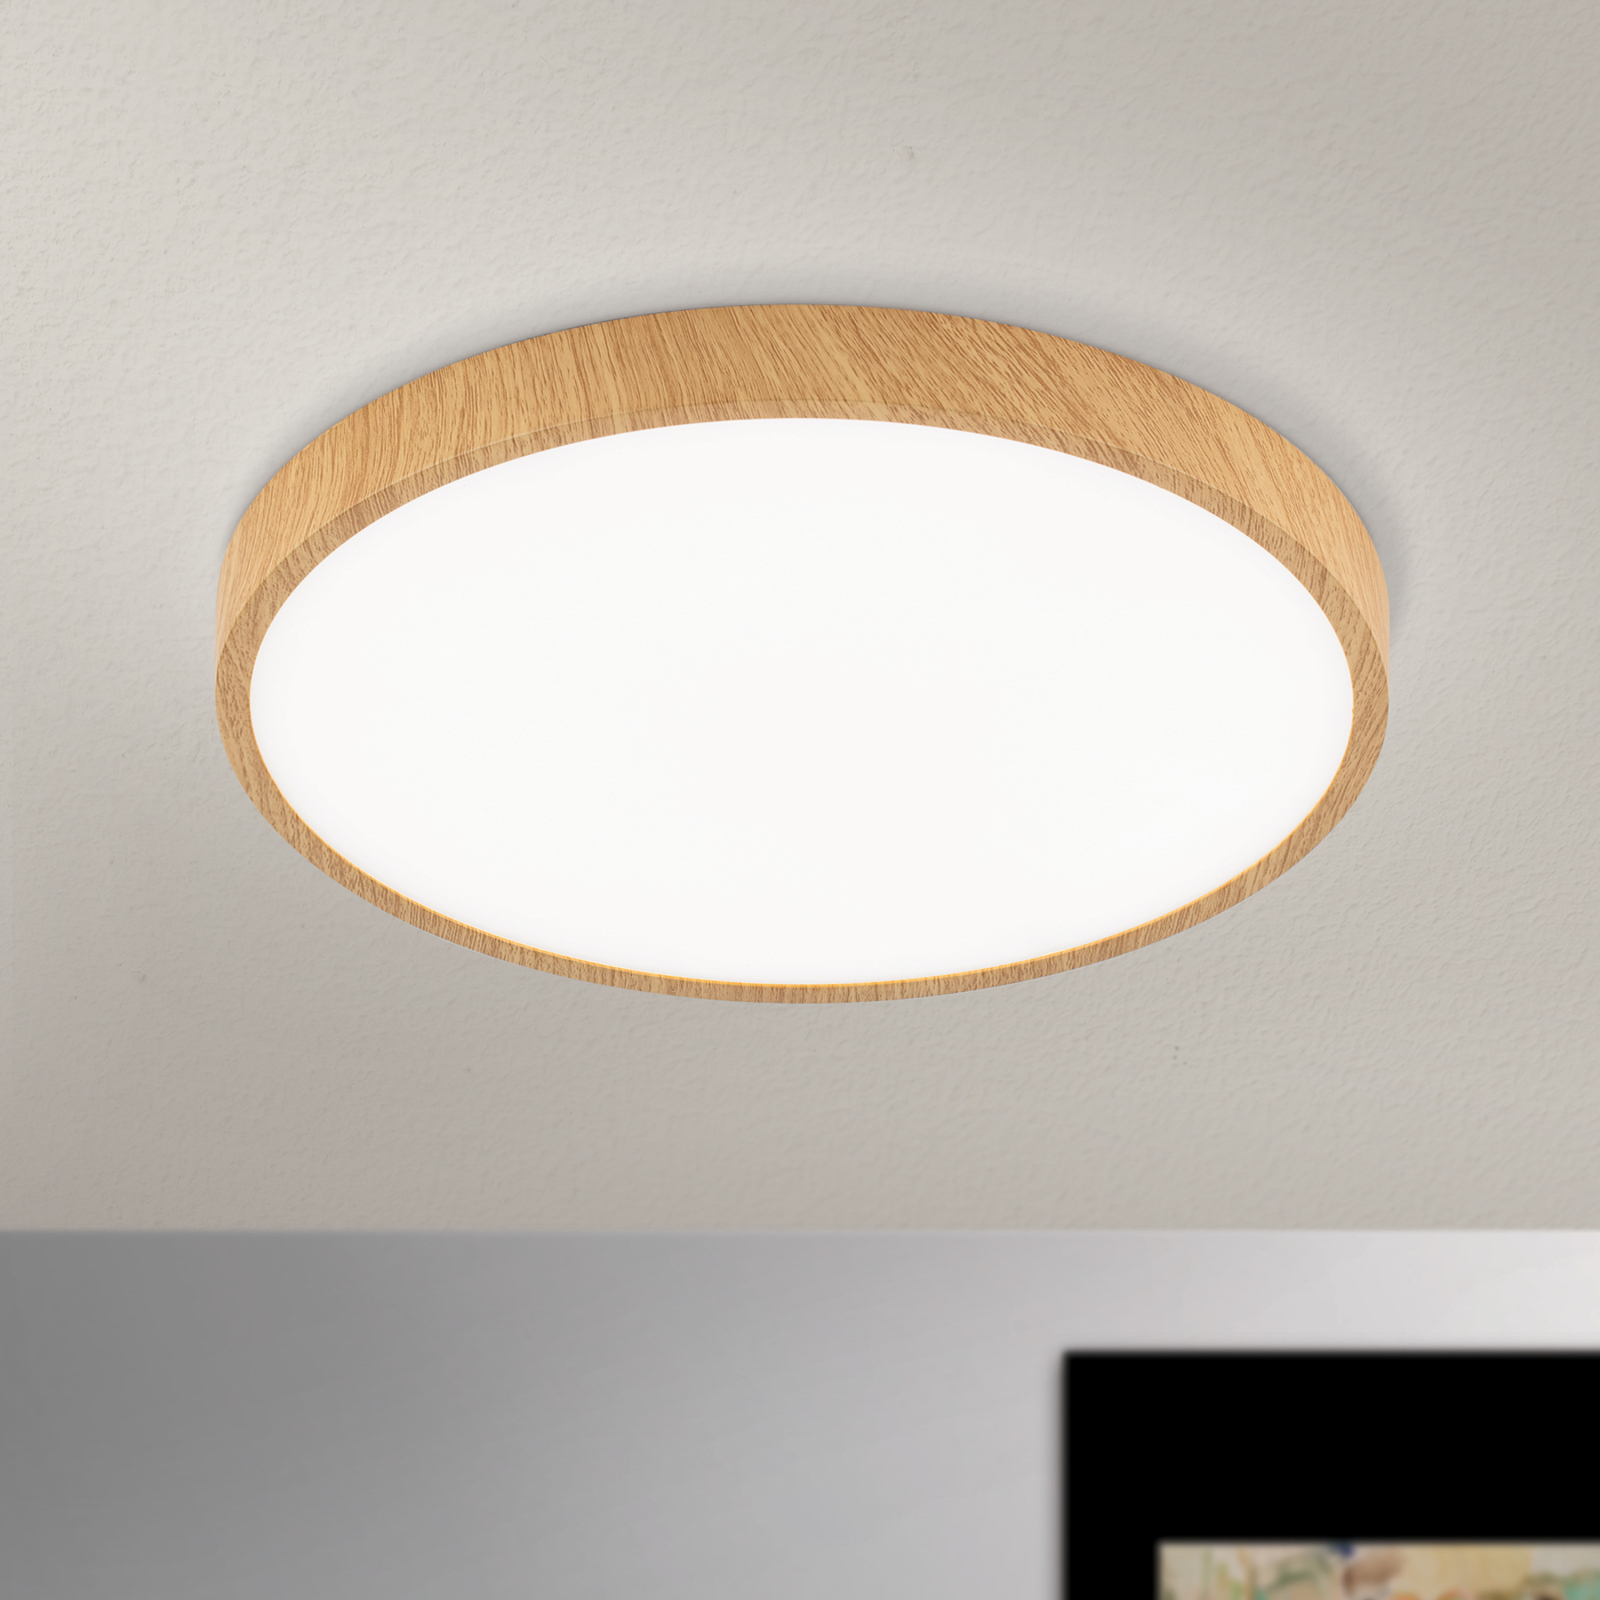 LED-taklampe Bully med treutseende, Ø 28 cm